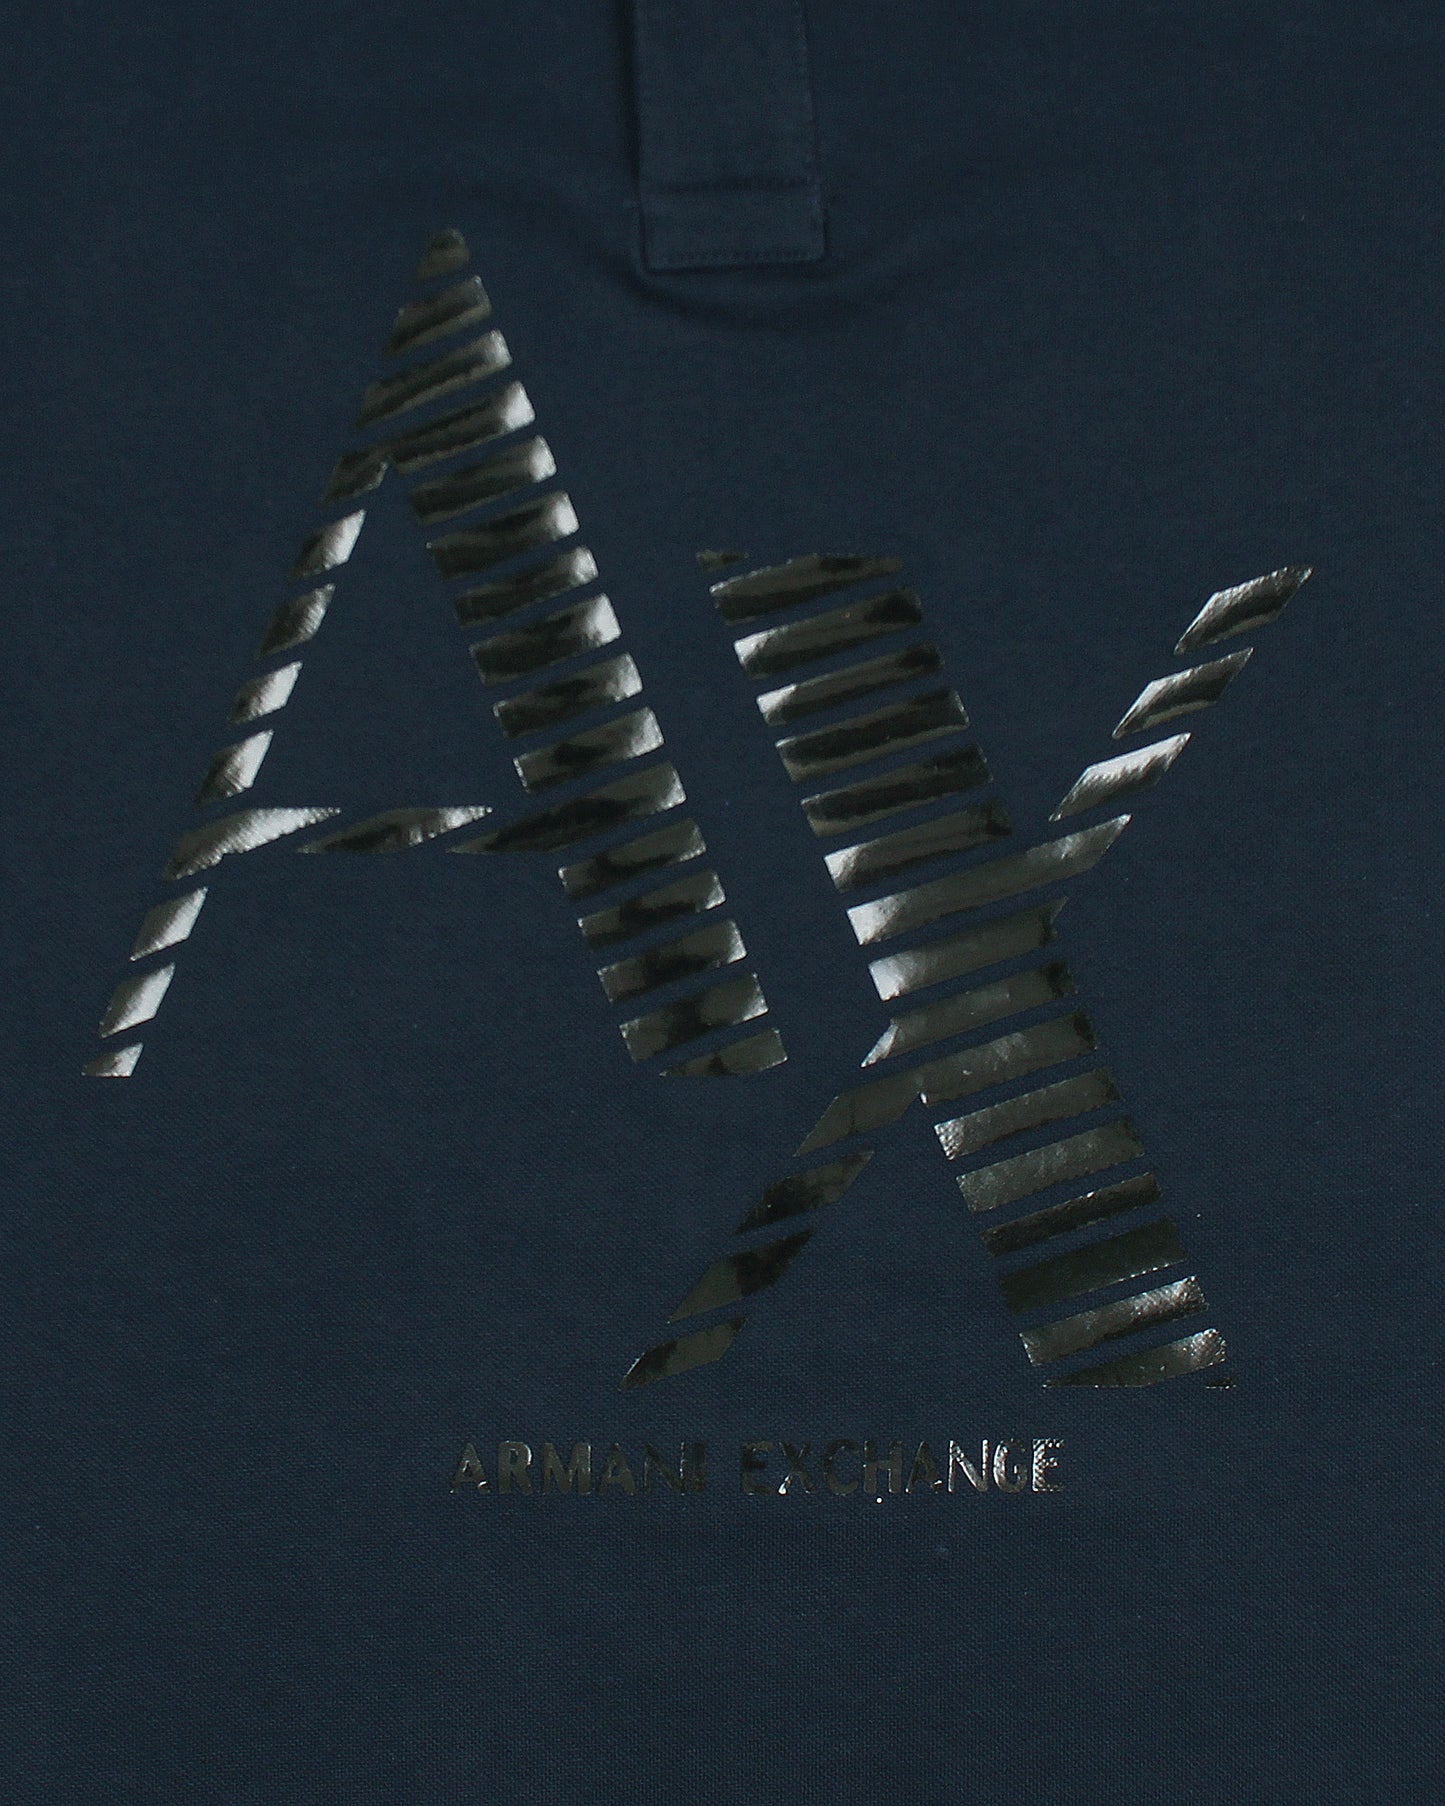 Exclusive A-X Polo Shirt - Navy Blue